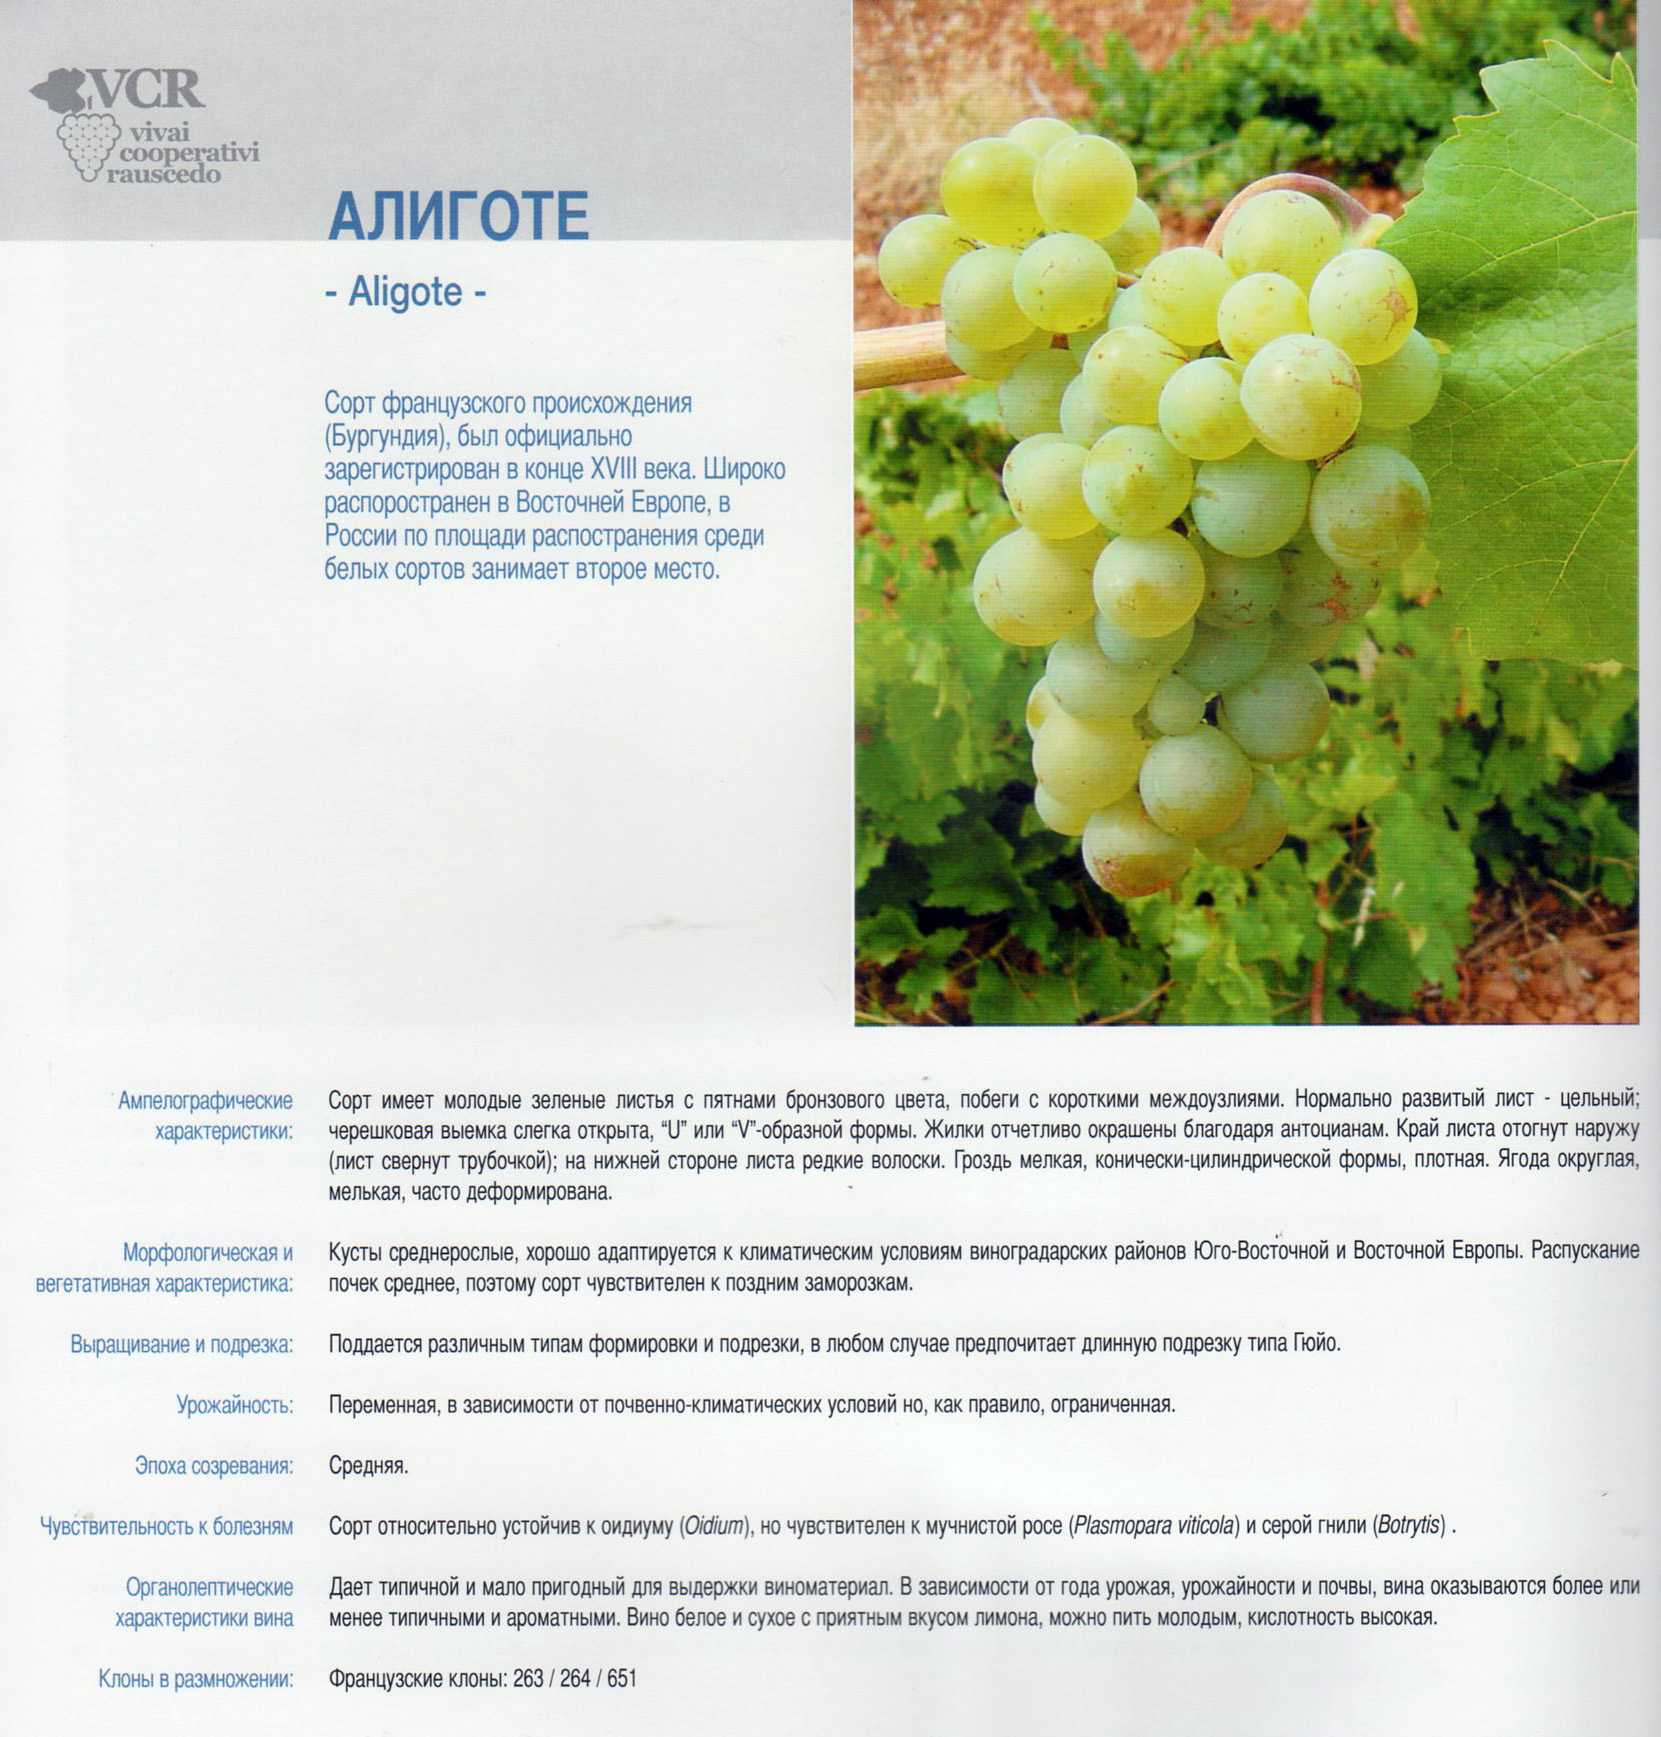 Виноград бажена - описание сорта, фото, отзывы